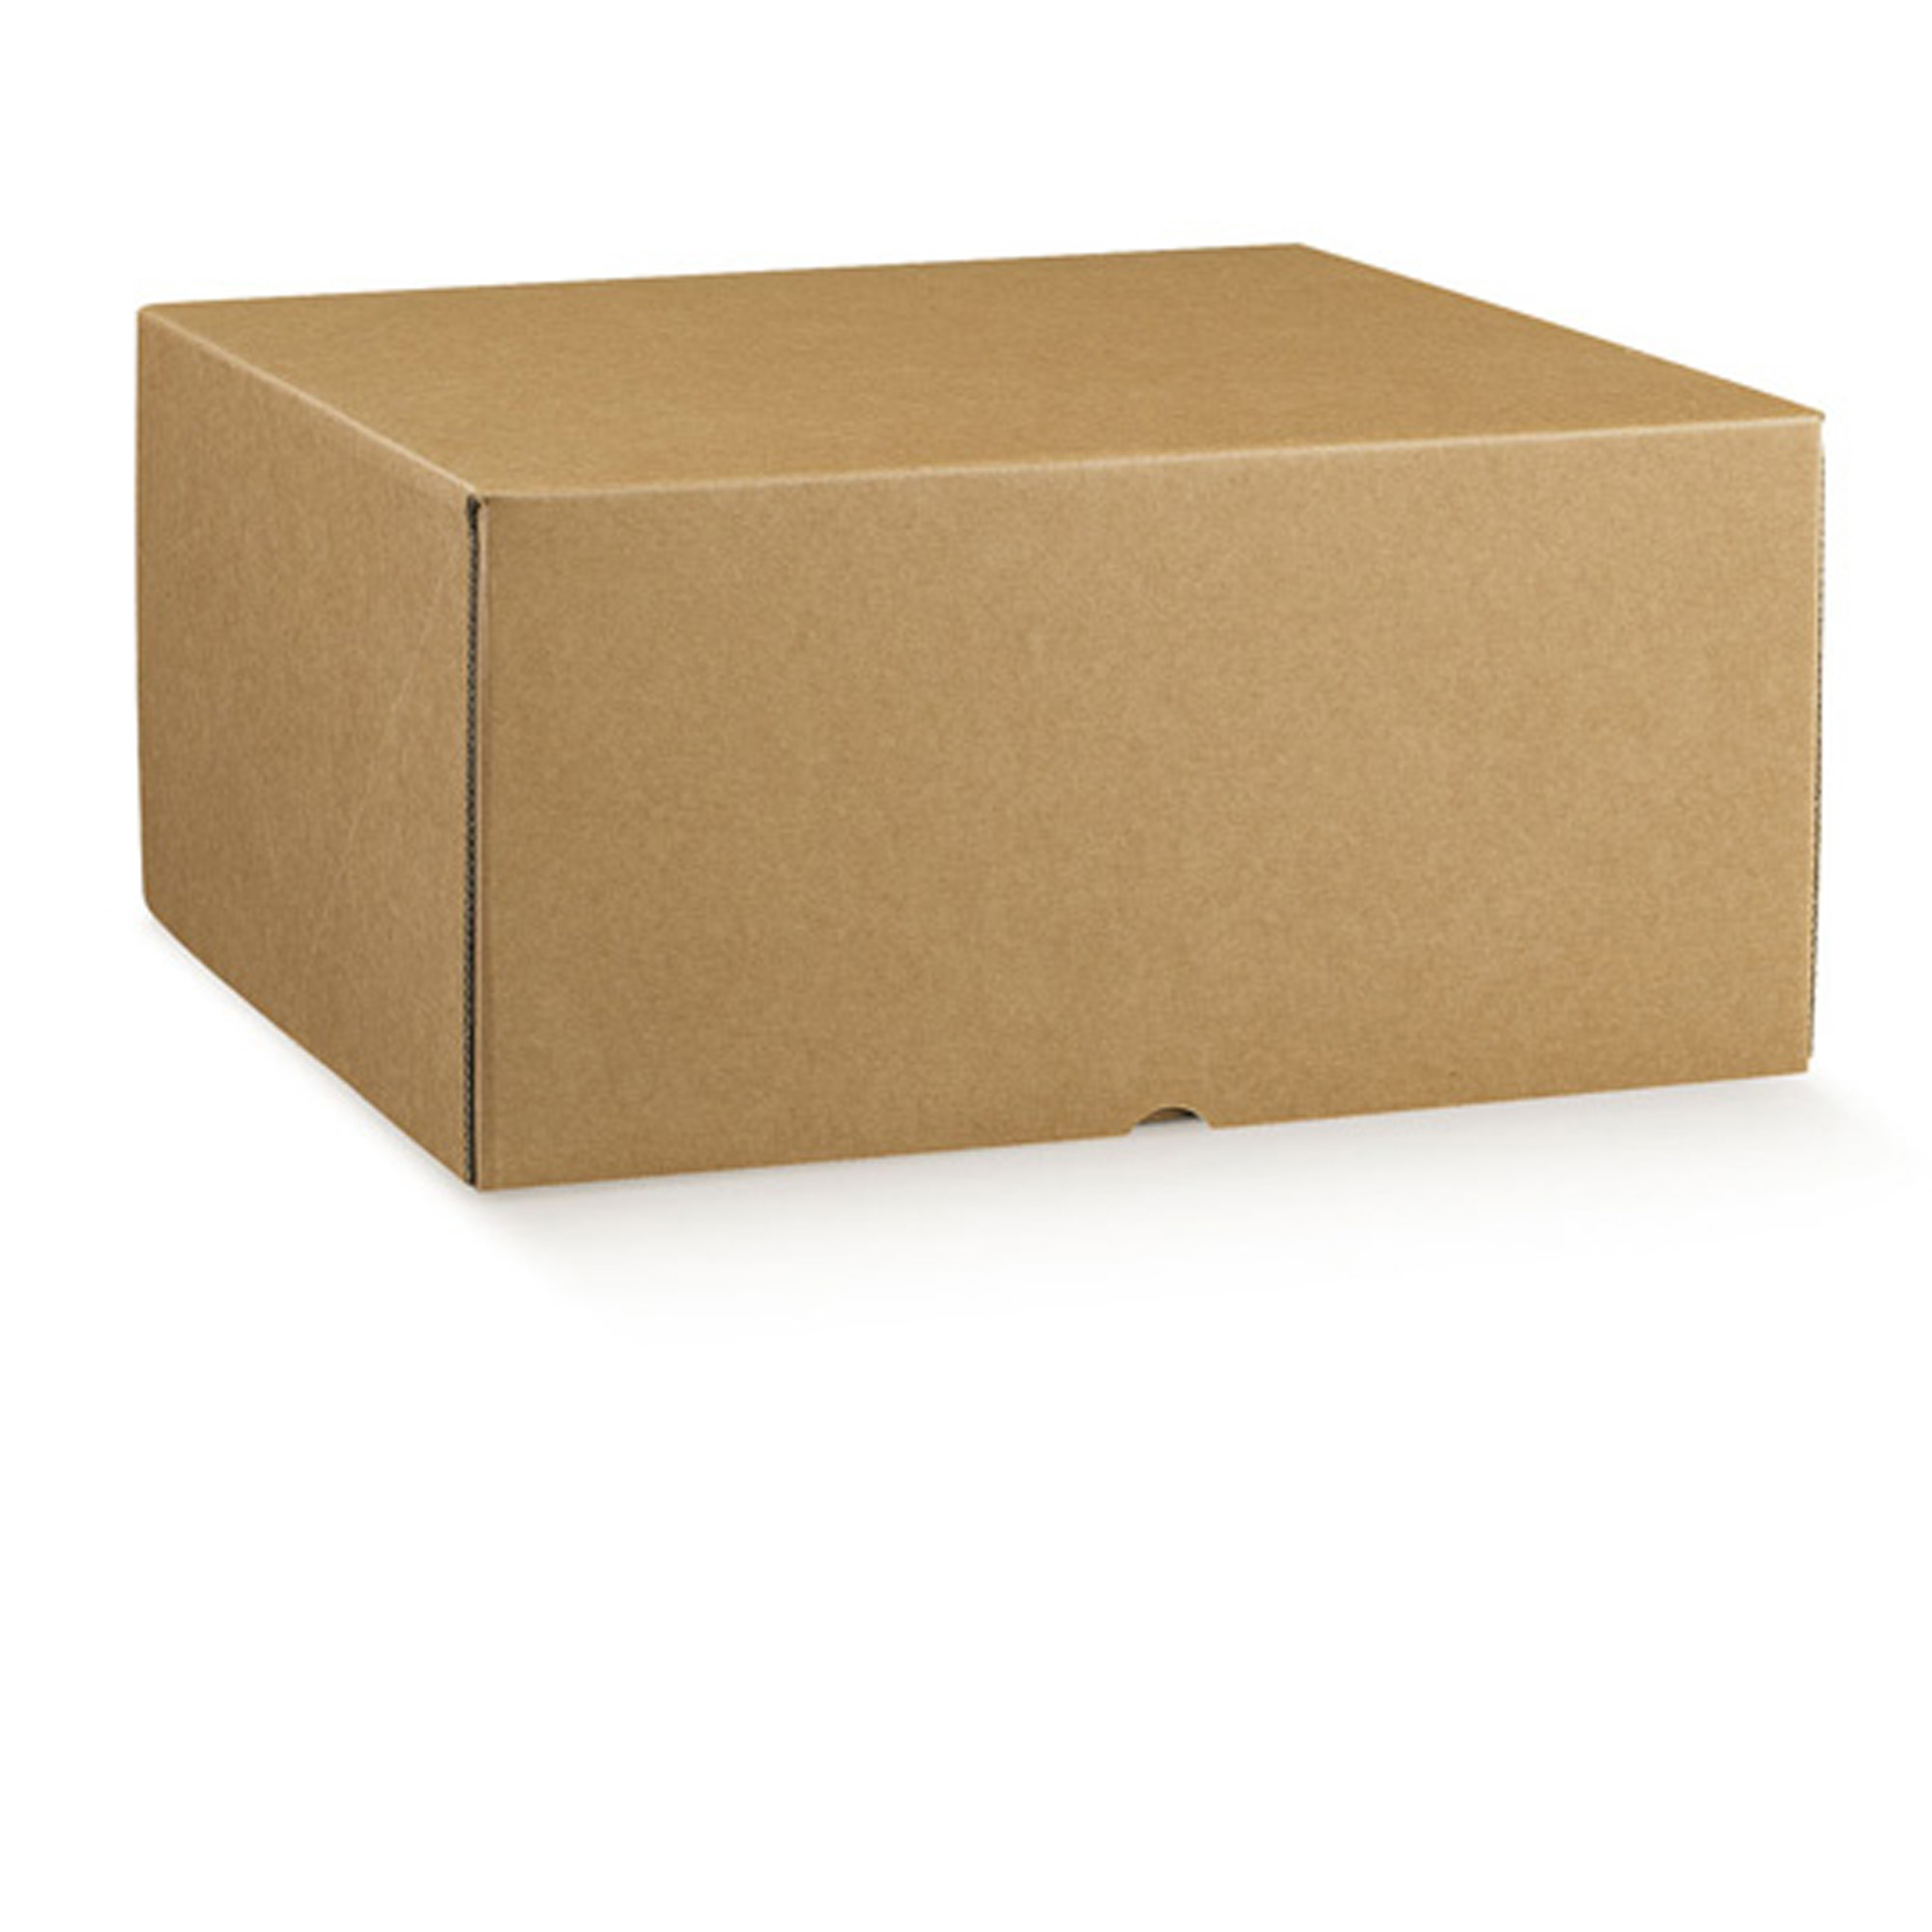 Scatola box per asporto linea Marmotta - 30x40x19,5 cm - avana - Scotton su